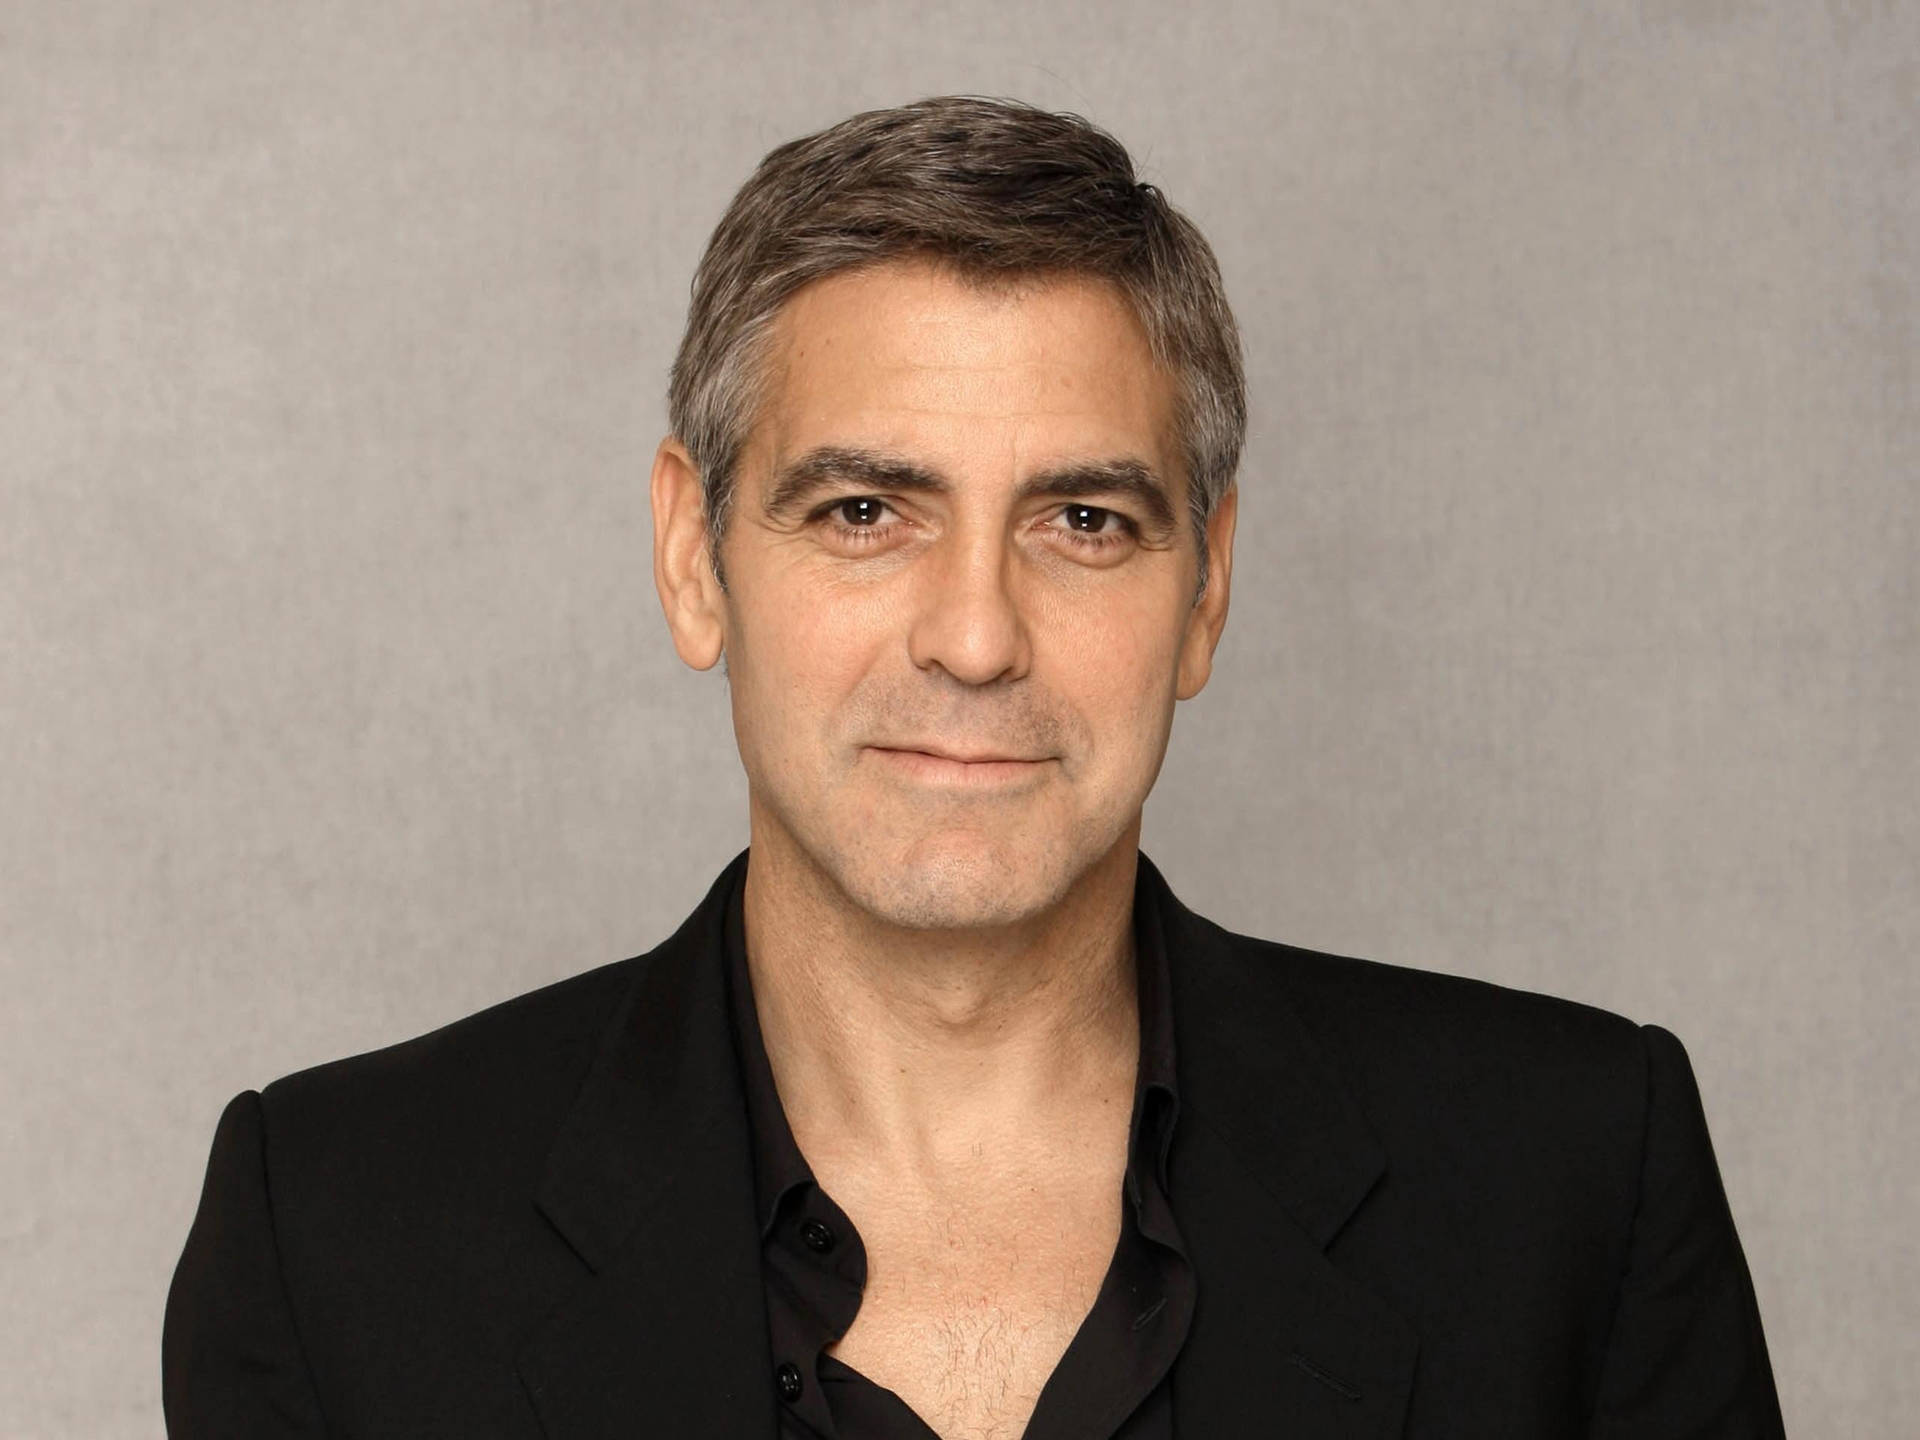 Fotode George Clooney Con Fondo Gris Fondo de pantalla